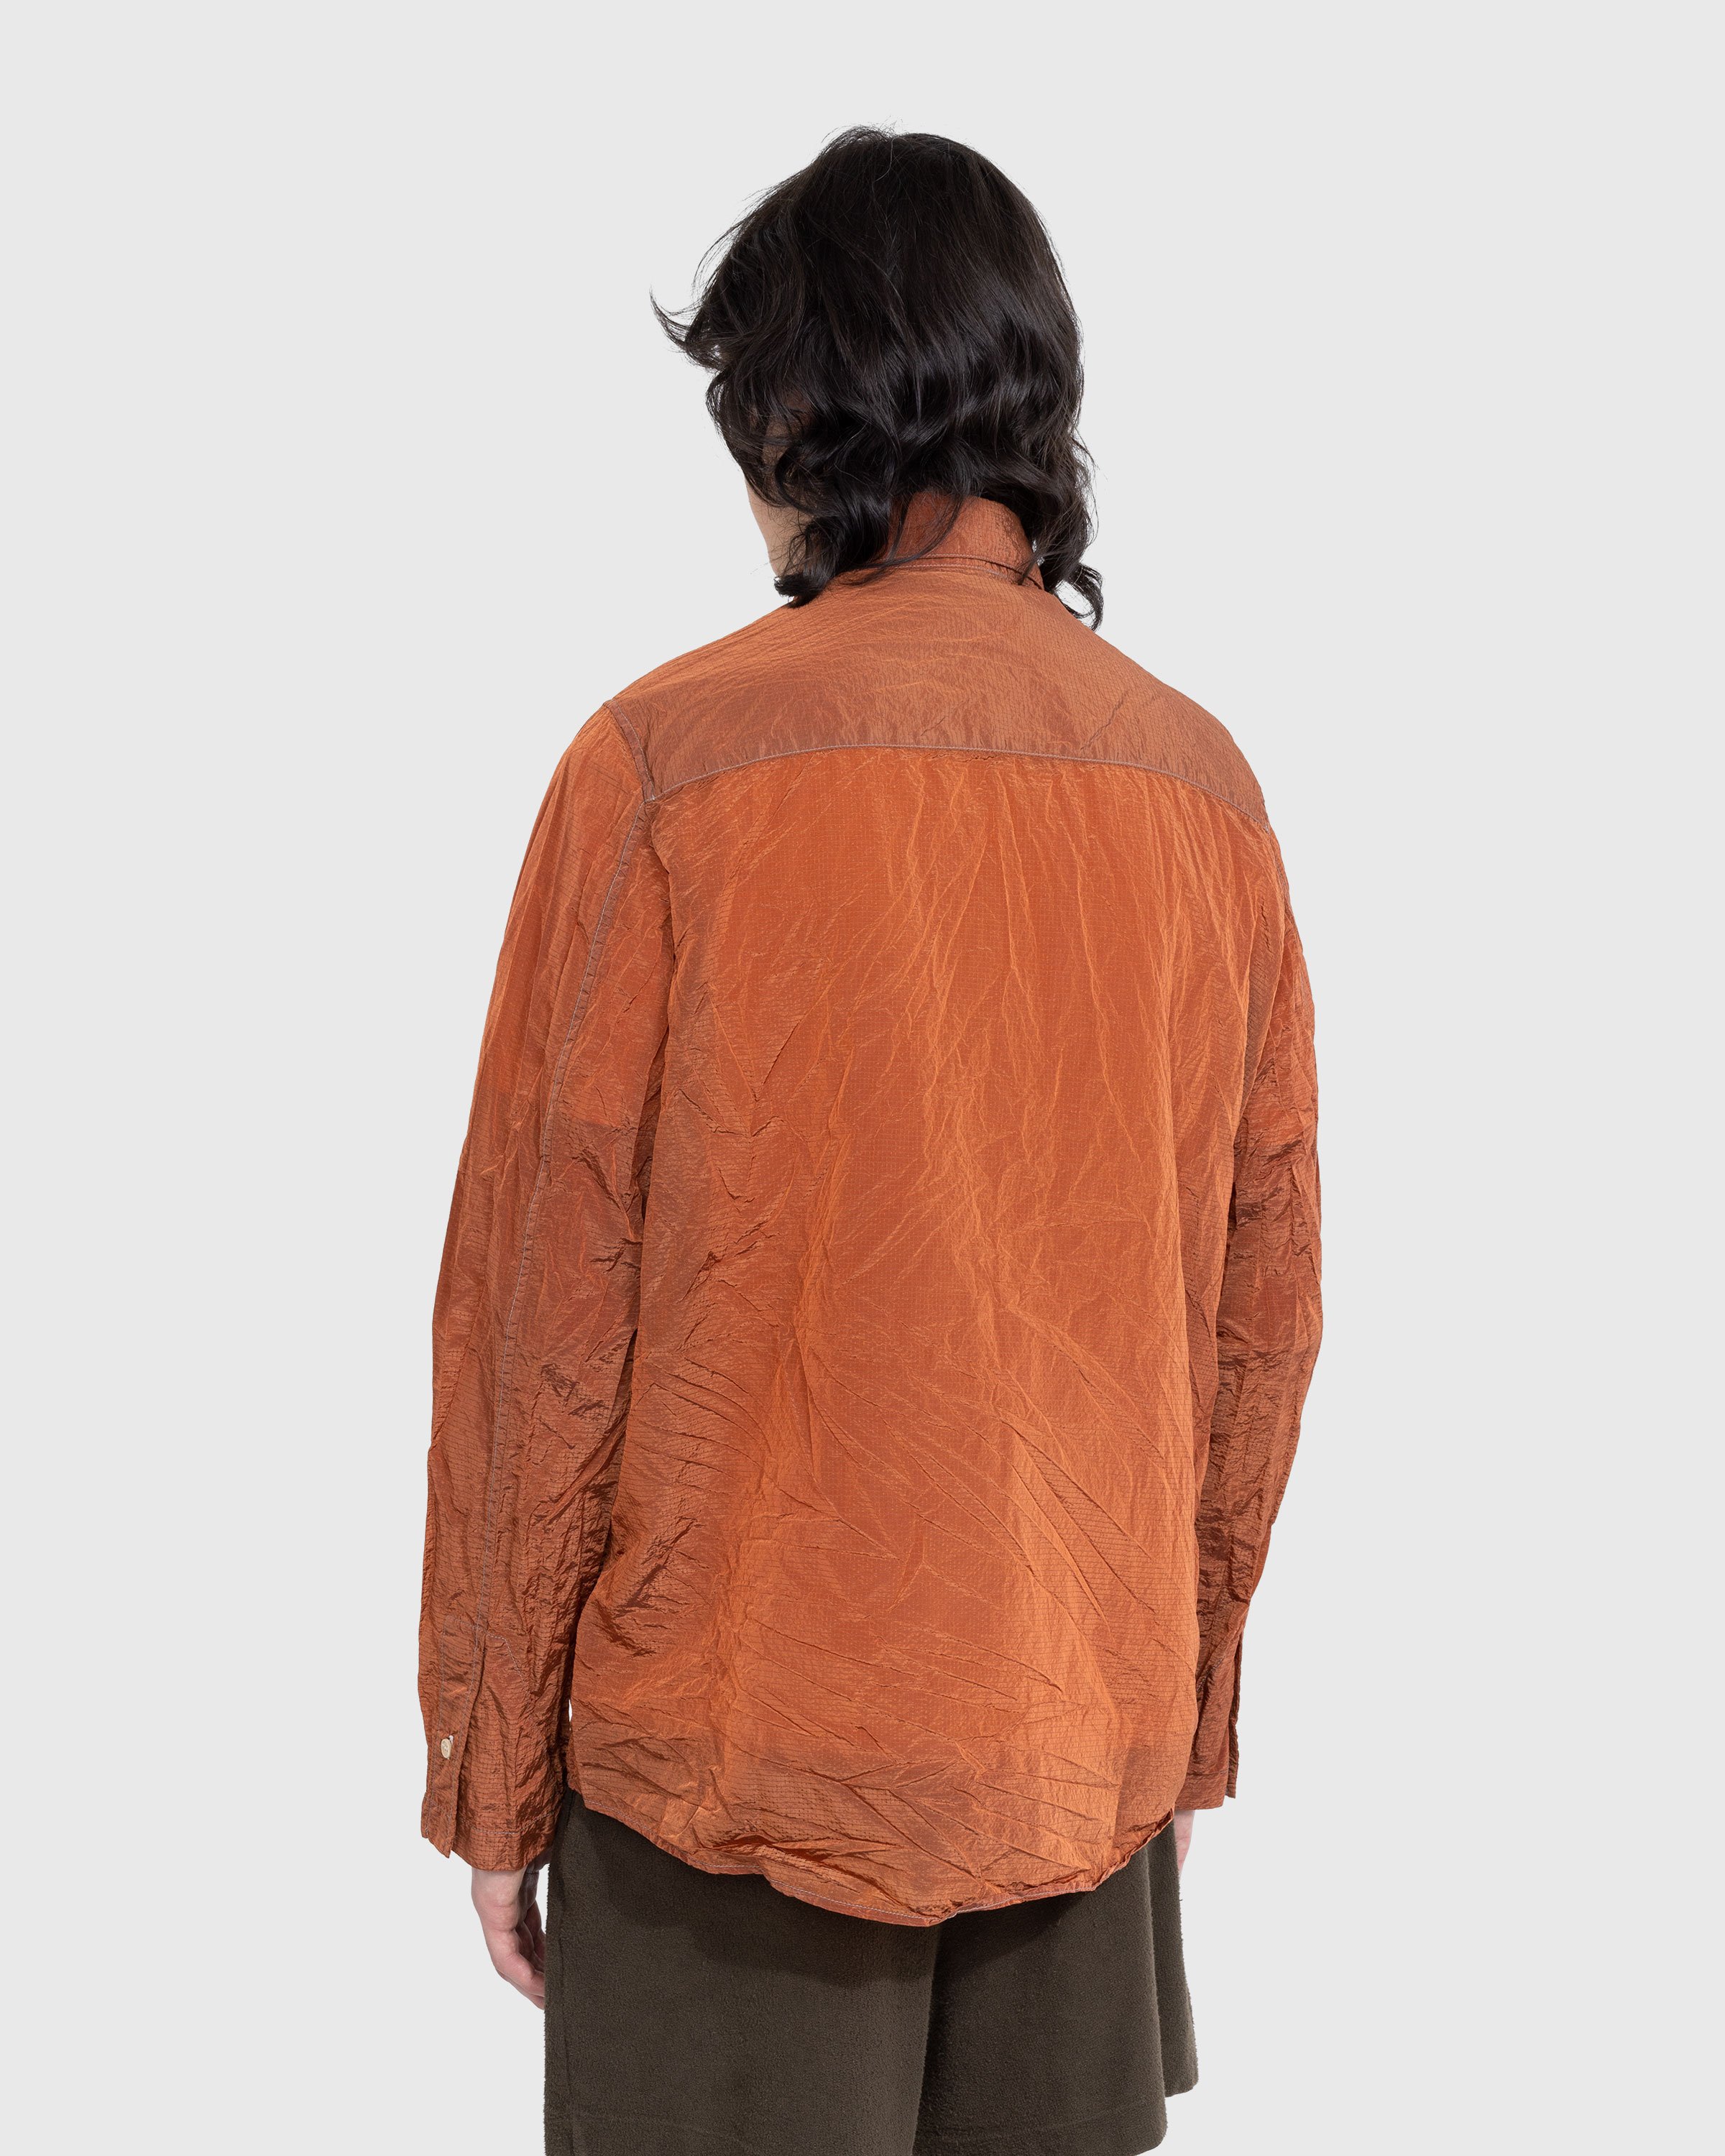 RANRA - Jor Shirt Jacket Pureed Plum - Clothing - Red - Image 2